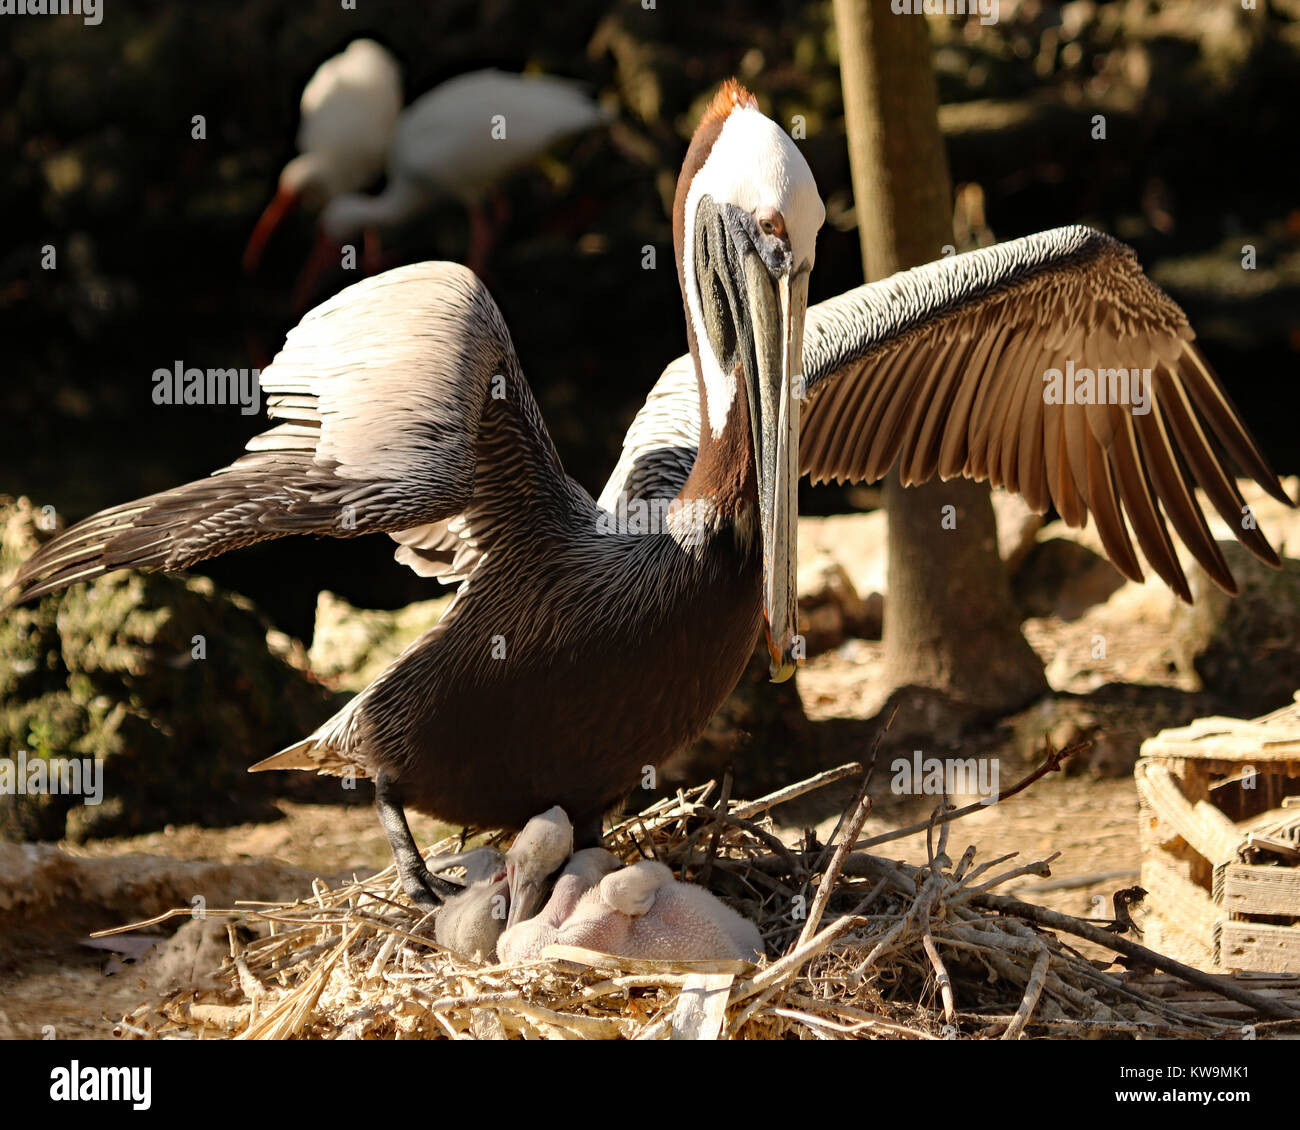 Pélican brun agressif dans le nid avec des bébés s'abattant des ailes pour effrayer les autres oiseaux qui s'approchent trop Banque D'Images